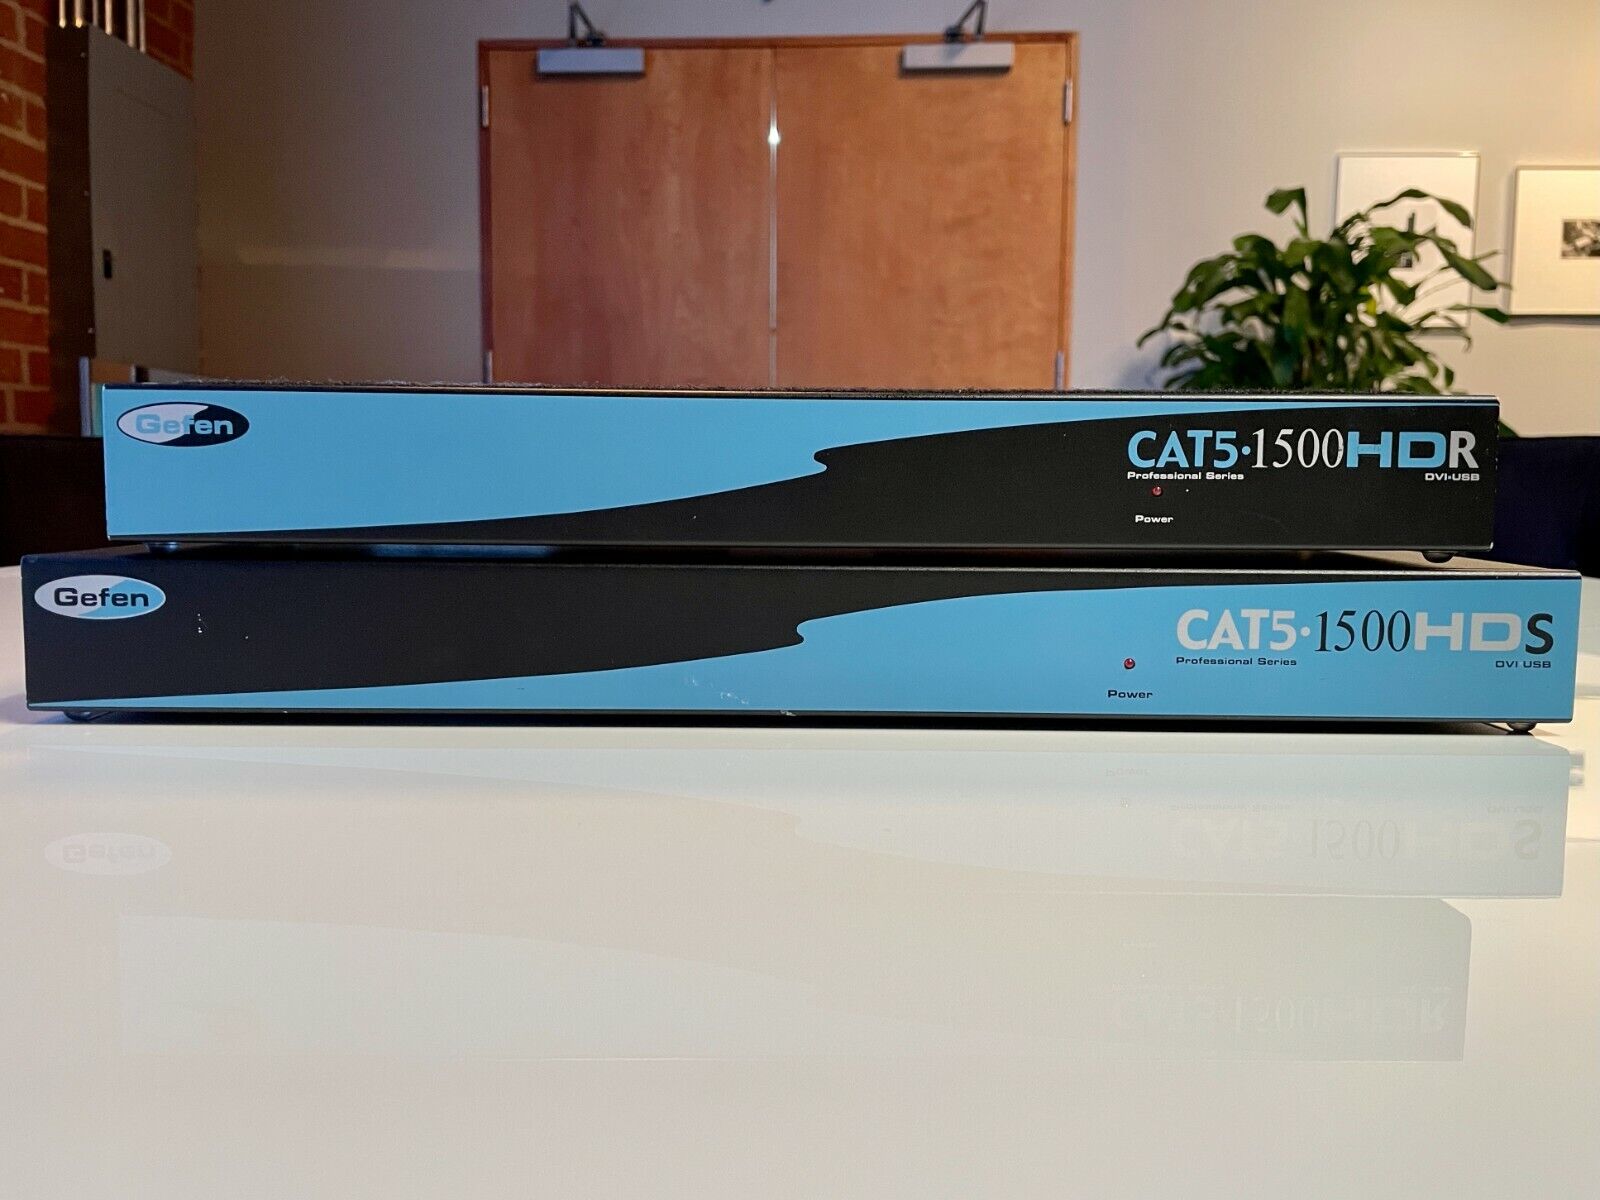 Gefen CAT 5 1500 HD S Sender and CAT 5 1500 HDR Receiver DVI / USB